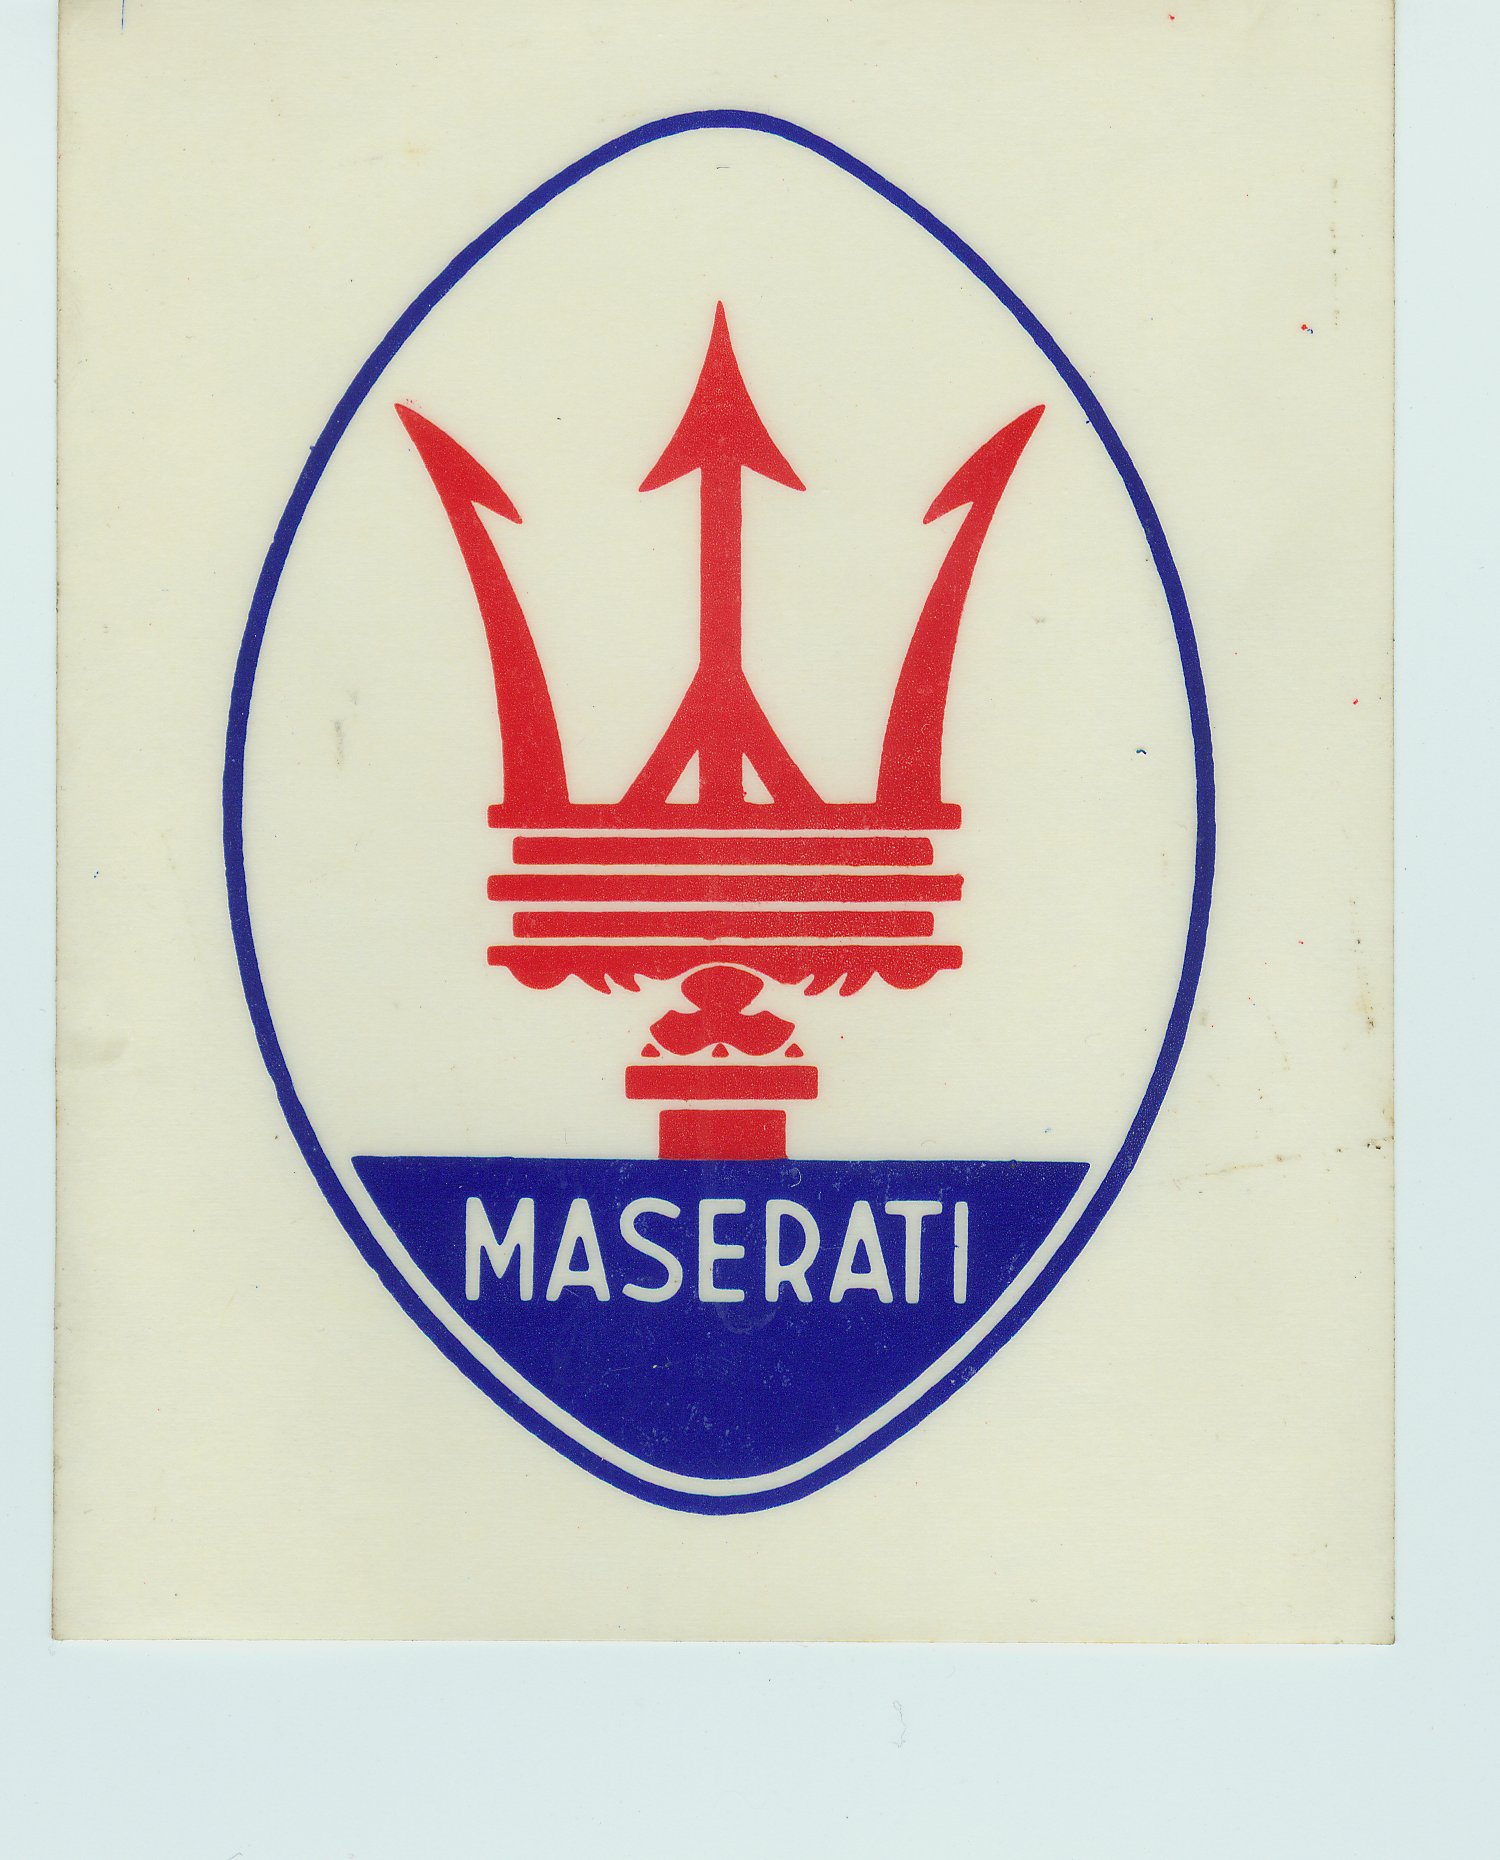 Maserati+logo+pictures